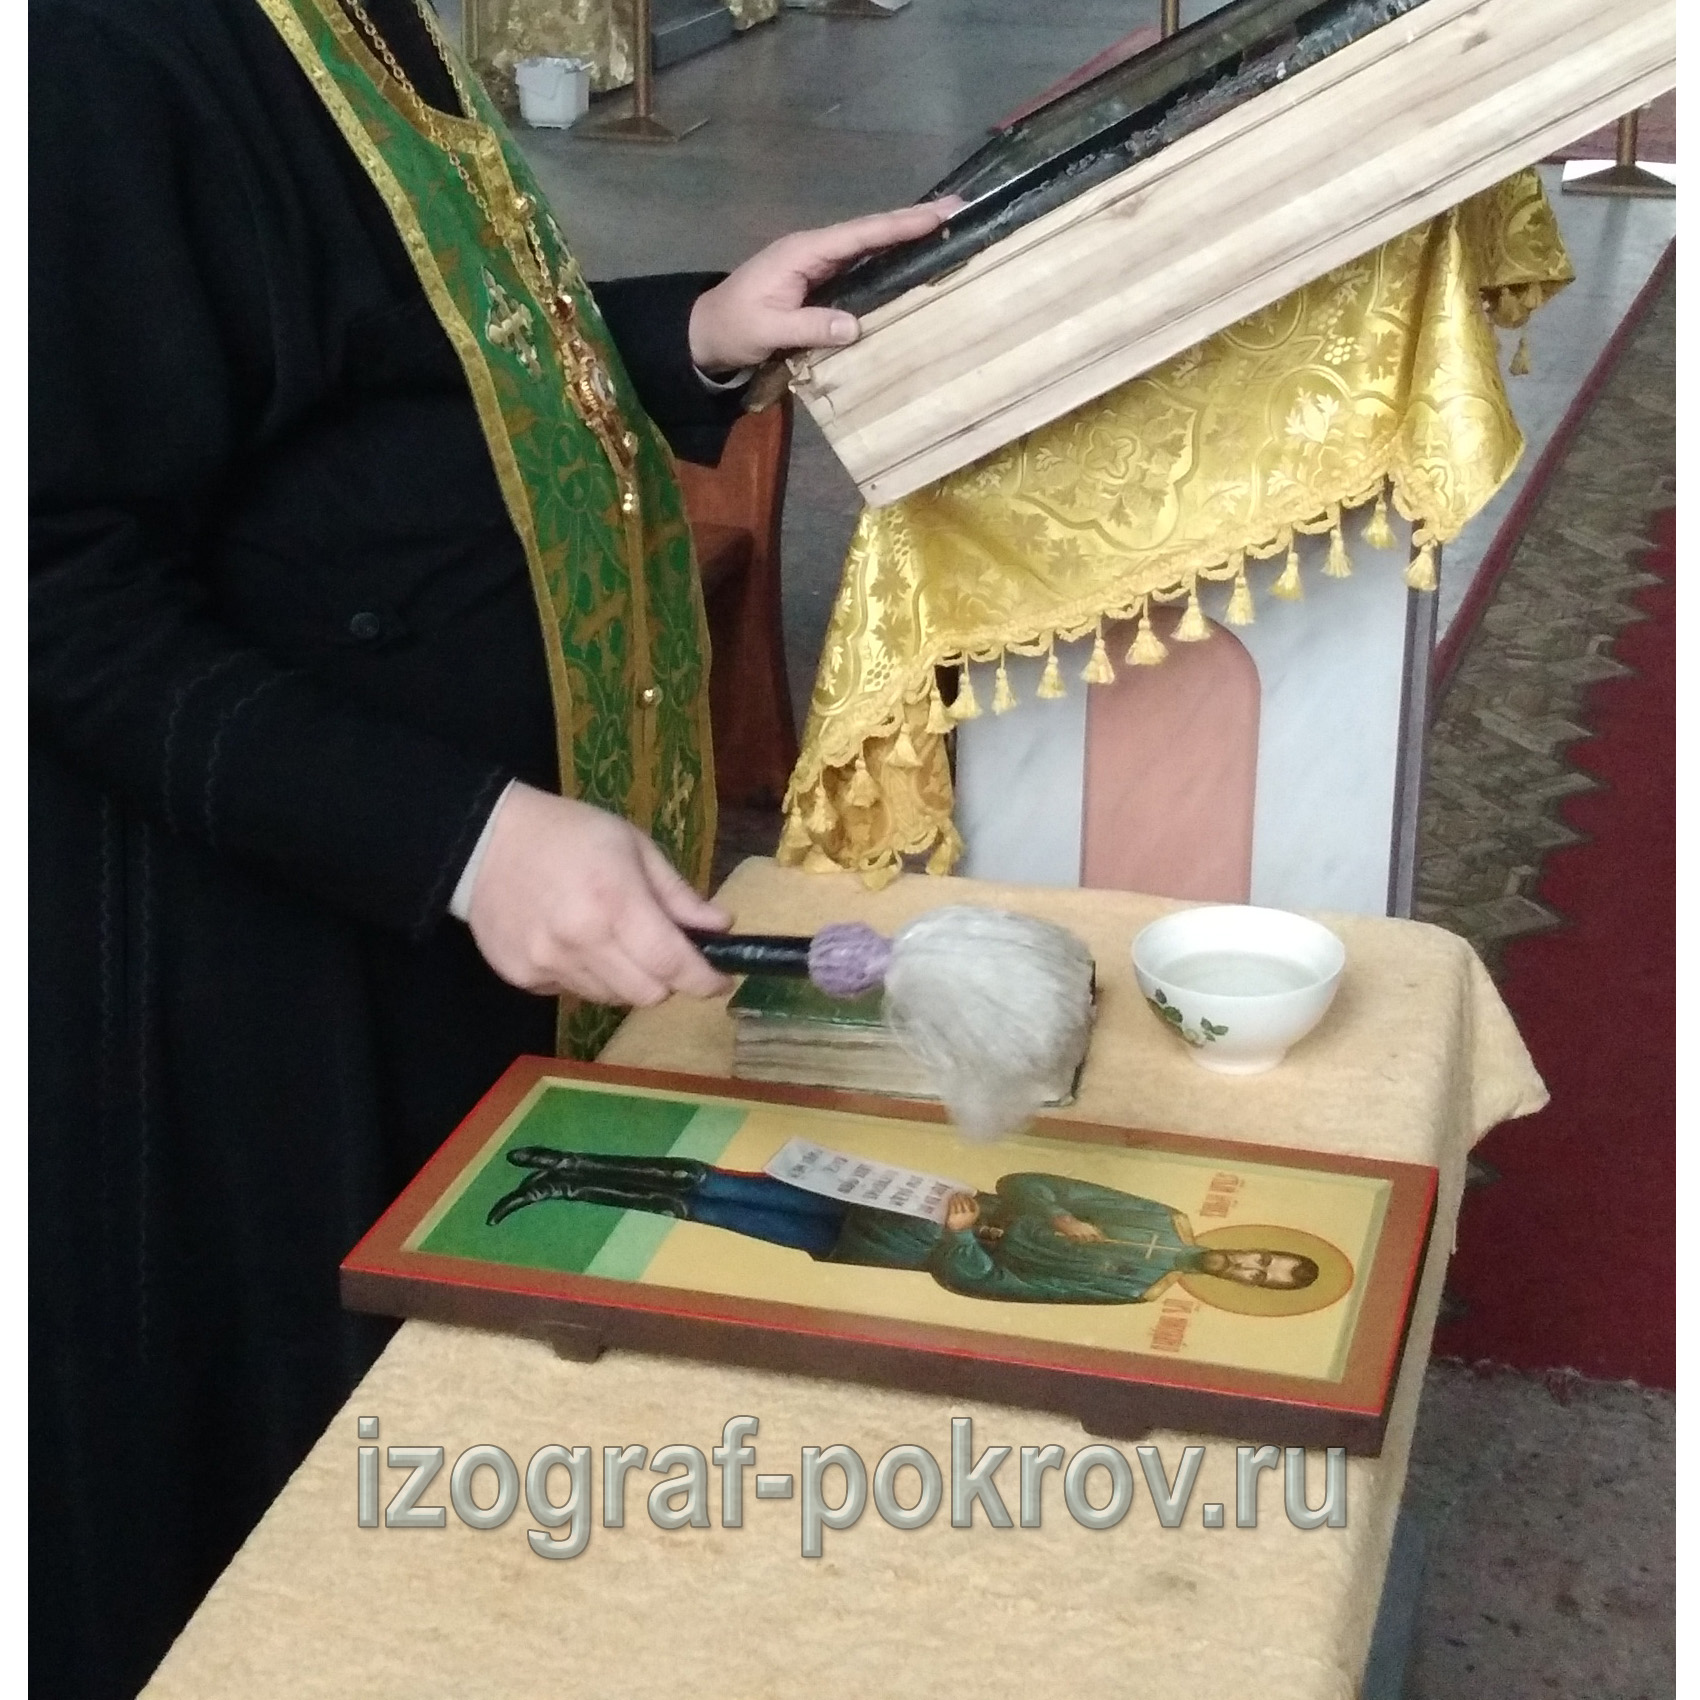 Освящение готовой иконы Царь Николай 2 в храме Покрова Пресвятой Богородицы